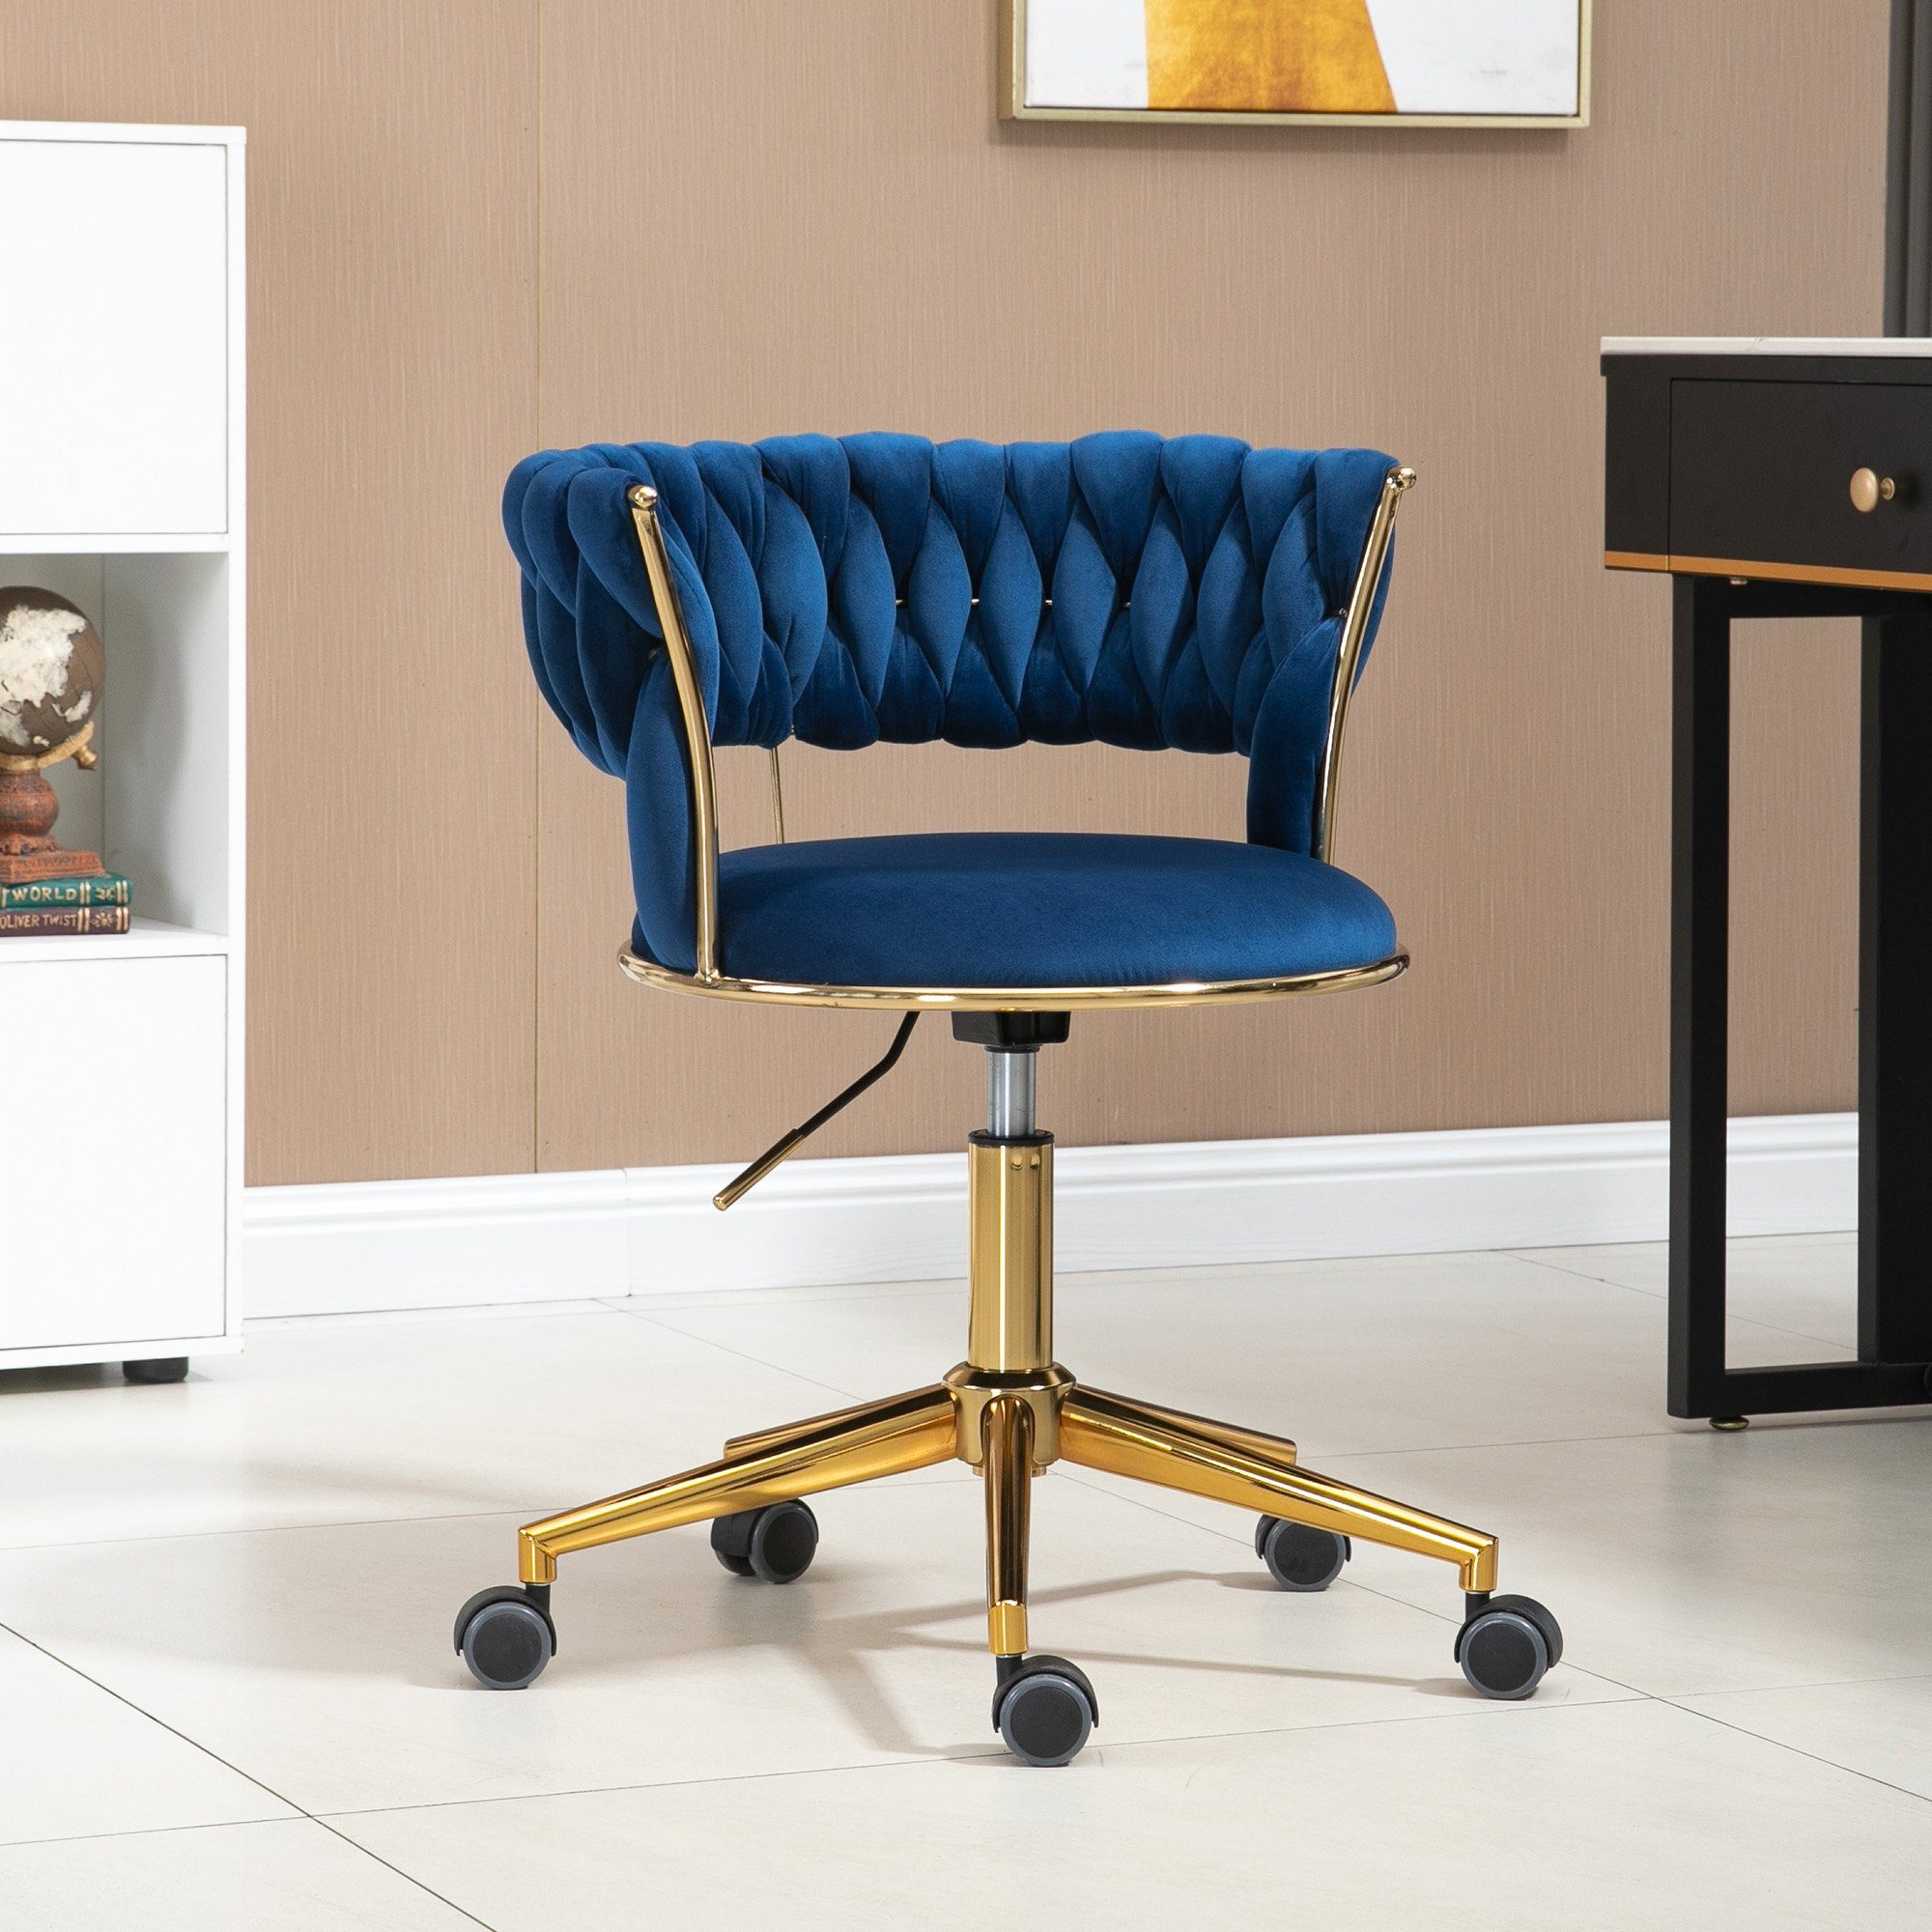 OKWISH Bürostuhl Drehstuhl 360° drehbarer Polsterstuhl, Stoff-Bürostuh Blau